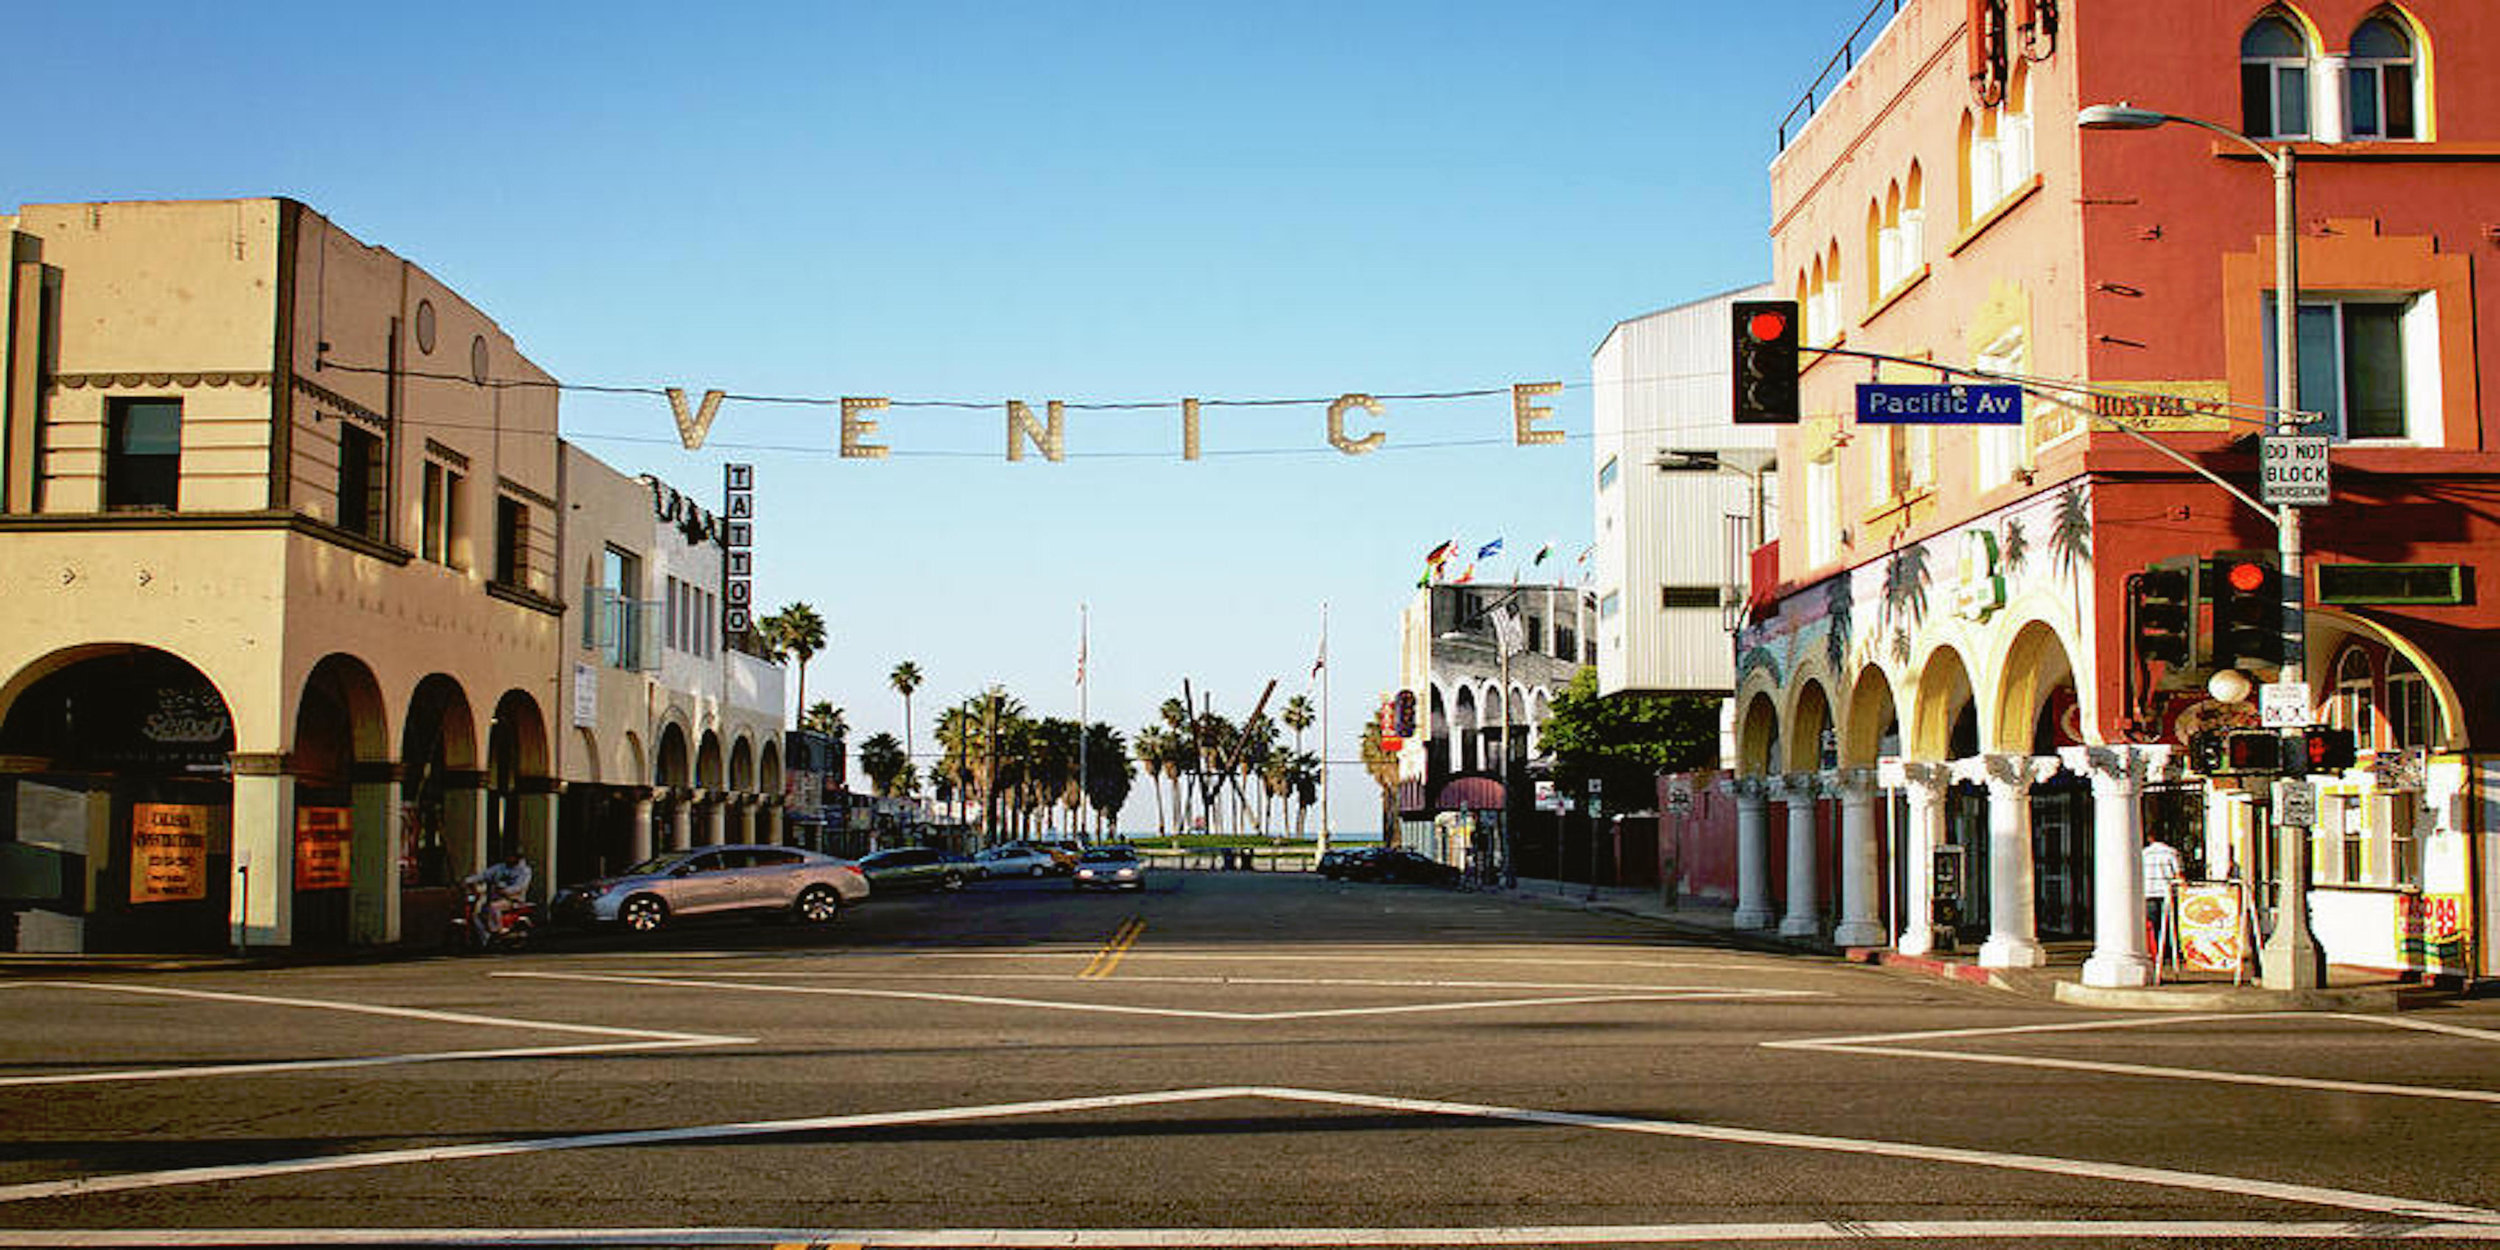 Venice Beach Wallpapers